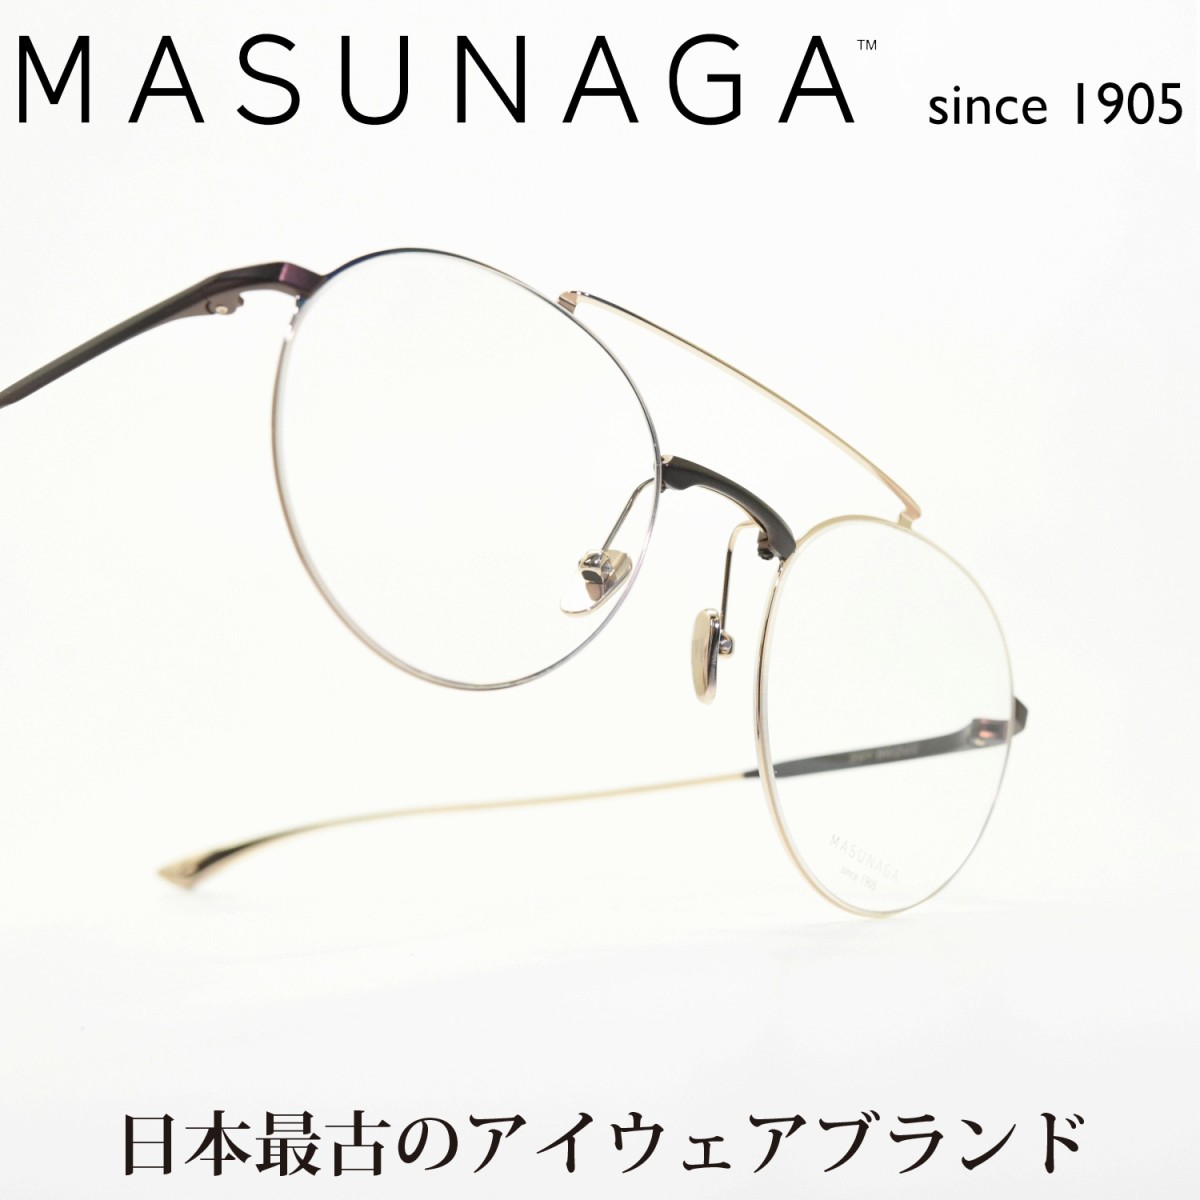 増永眼鏡 MASUNAGA since 1905 BAY BRIDGE col-23 BR/GOLD